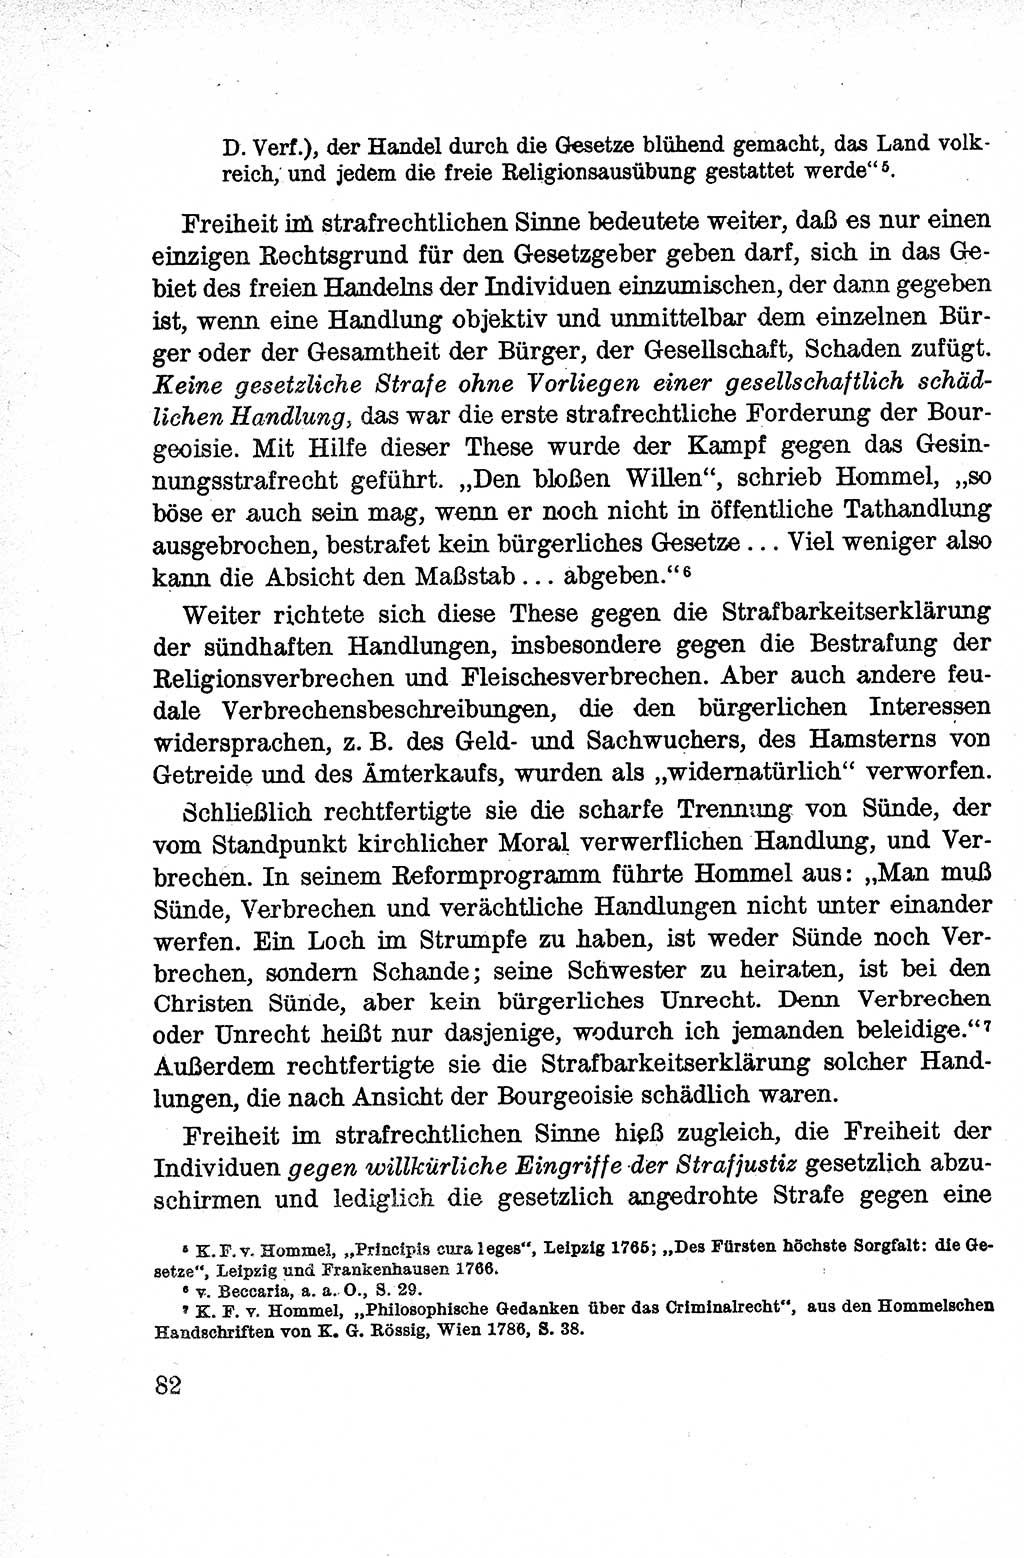 Lehrbuch des Strafrechts der Deutschen Demokratischen Republik (DDR), Allgemeiner Teil 1959, Seite 82 (Lb. Strafr. DDR AT 1959, S. 82)